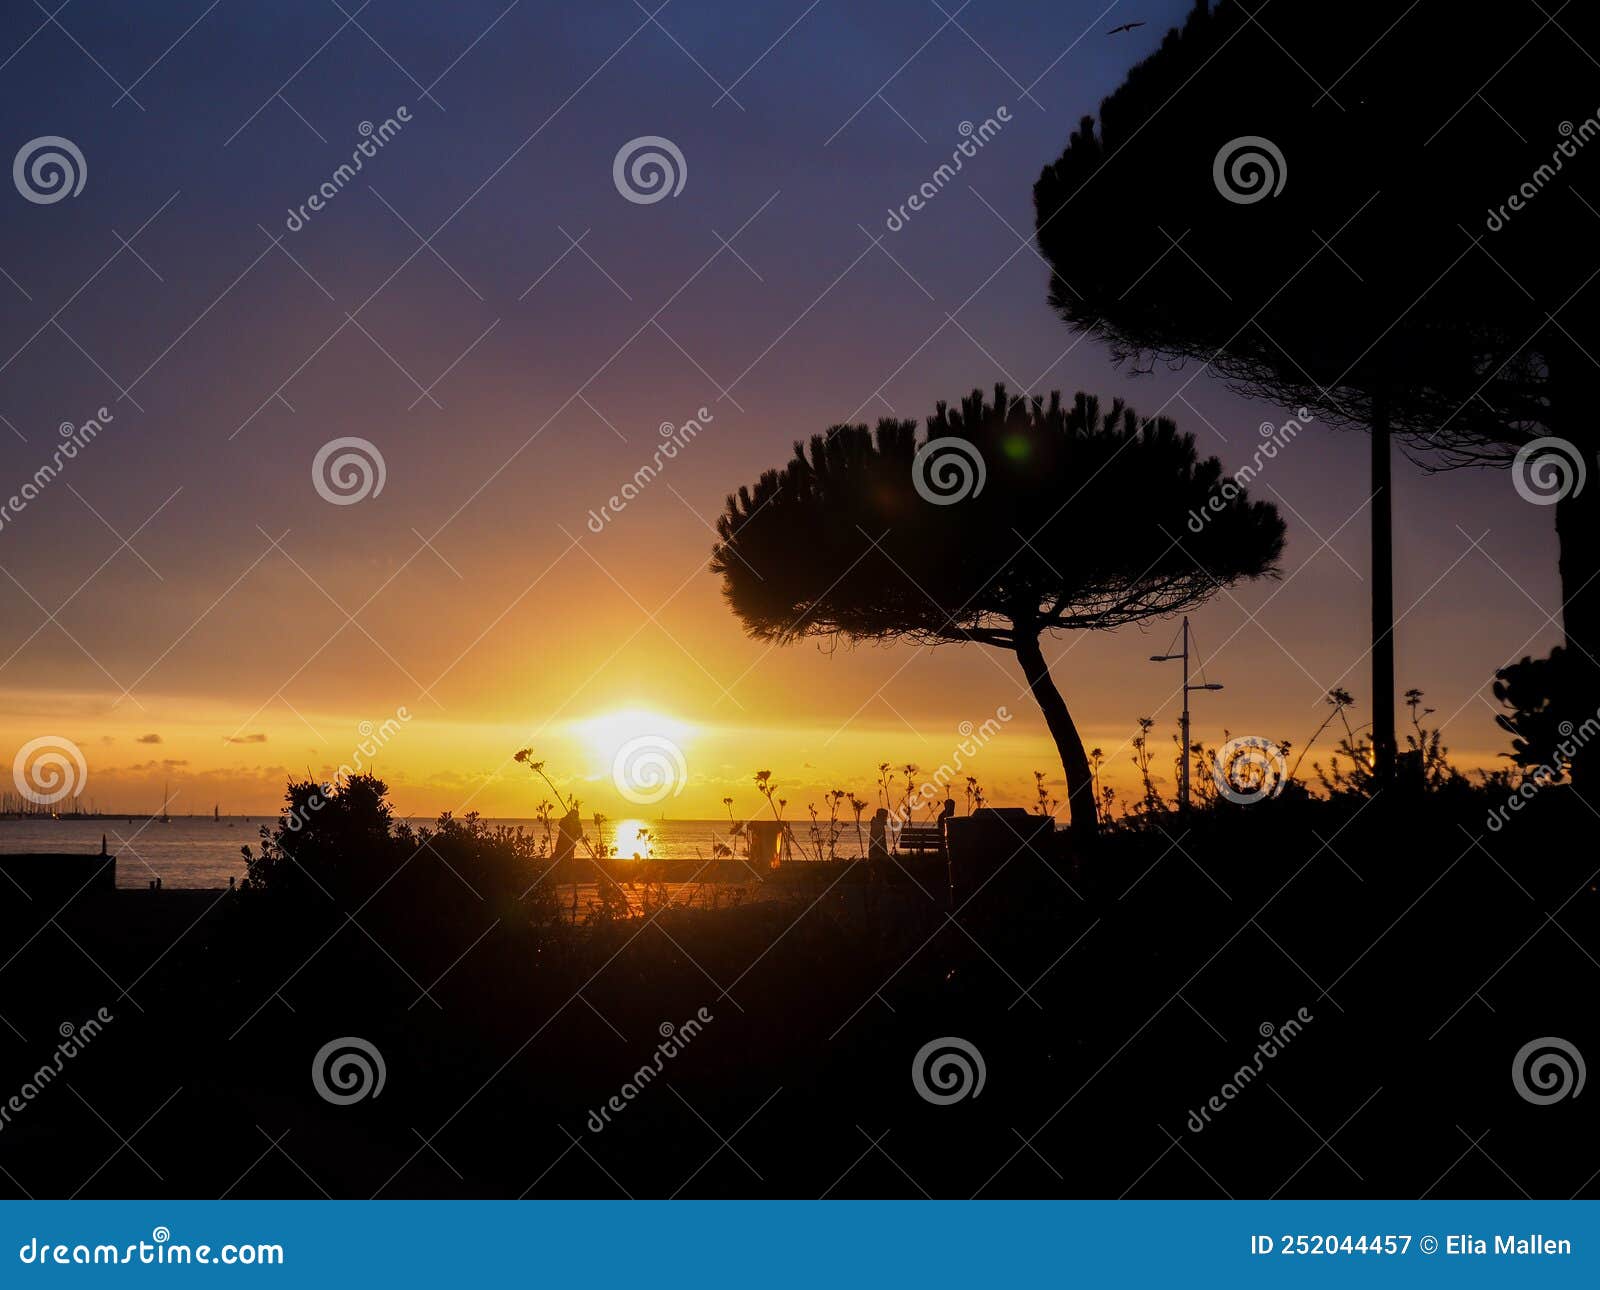 sunset on a beach in la rochelle